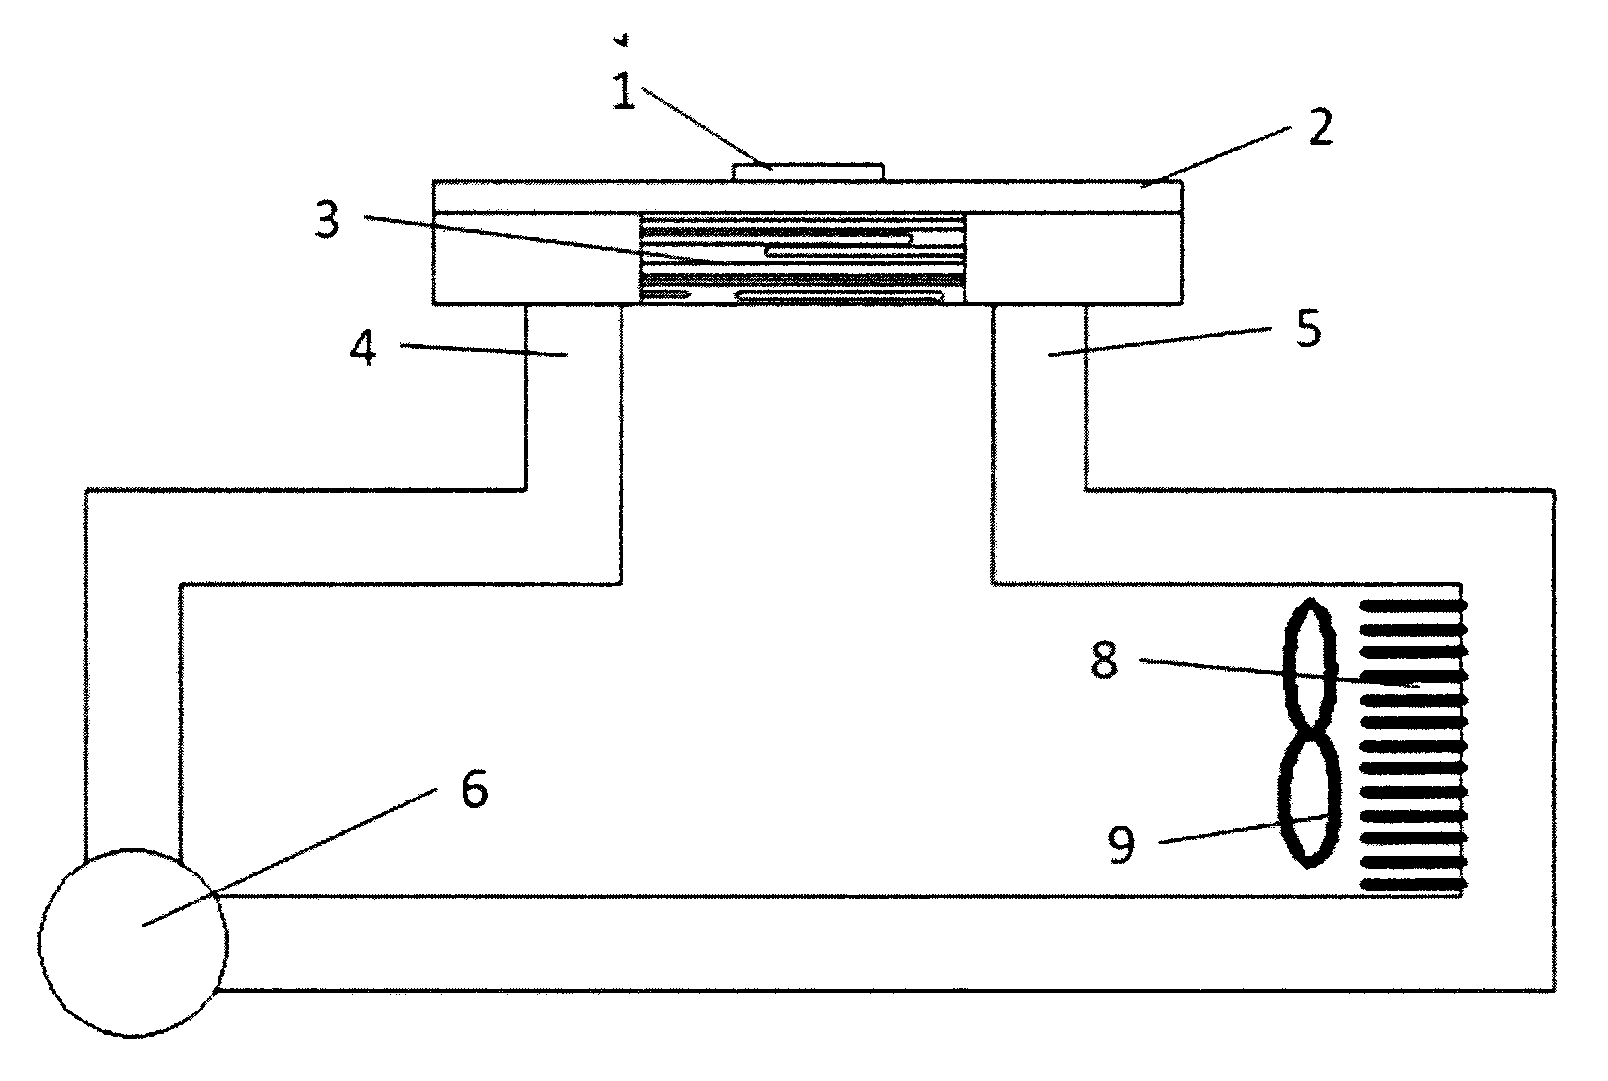 Lotus-type regular porous metal microchannel heat sink using liquid metal working medium